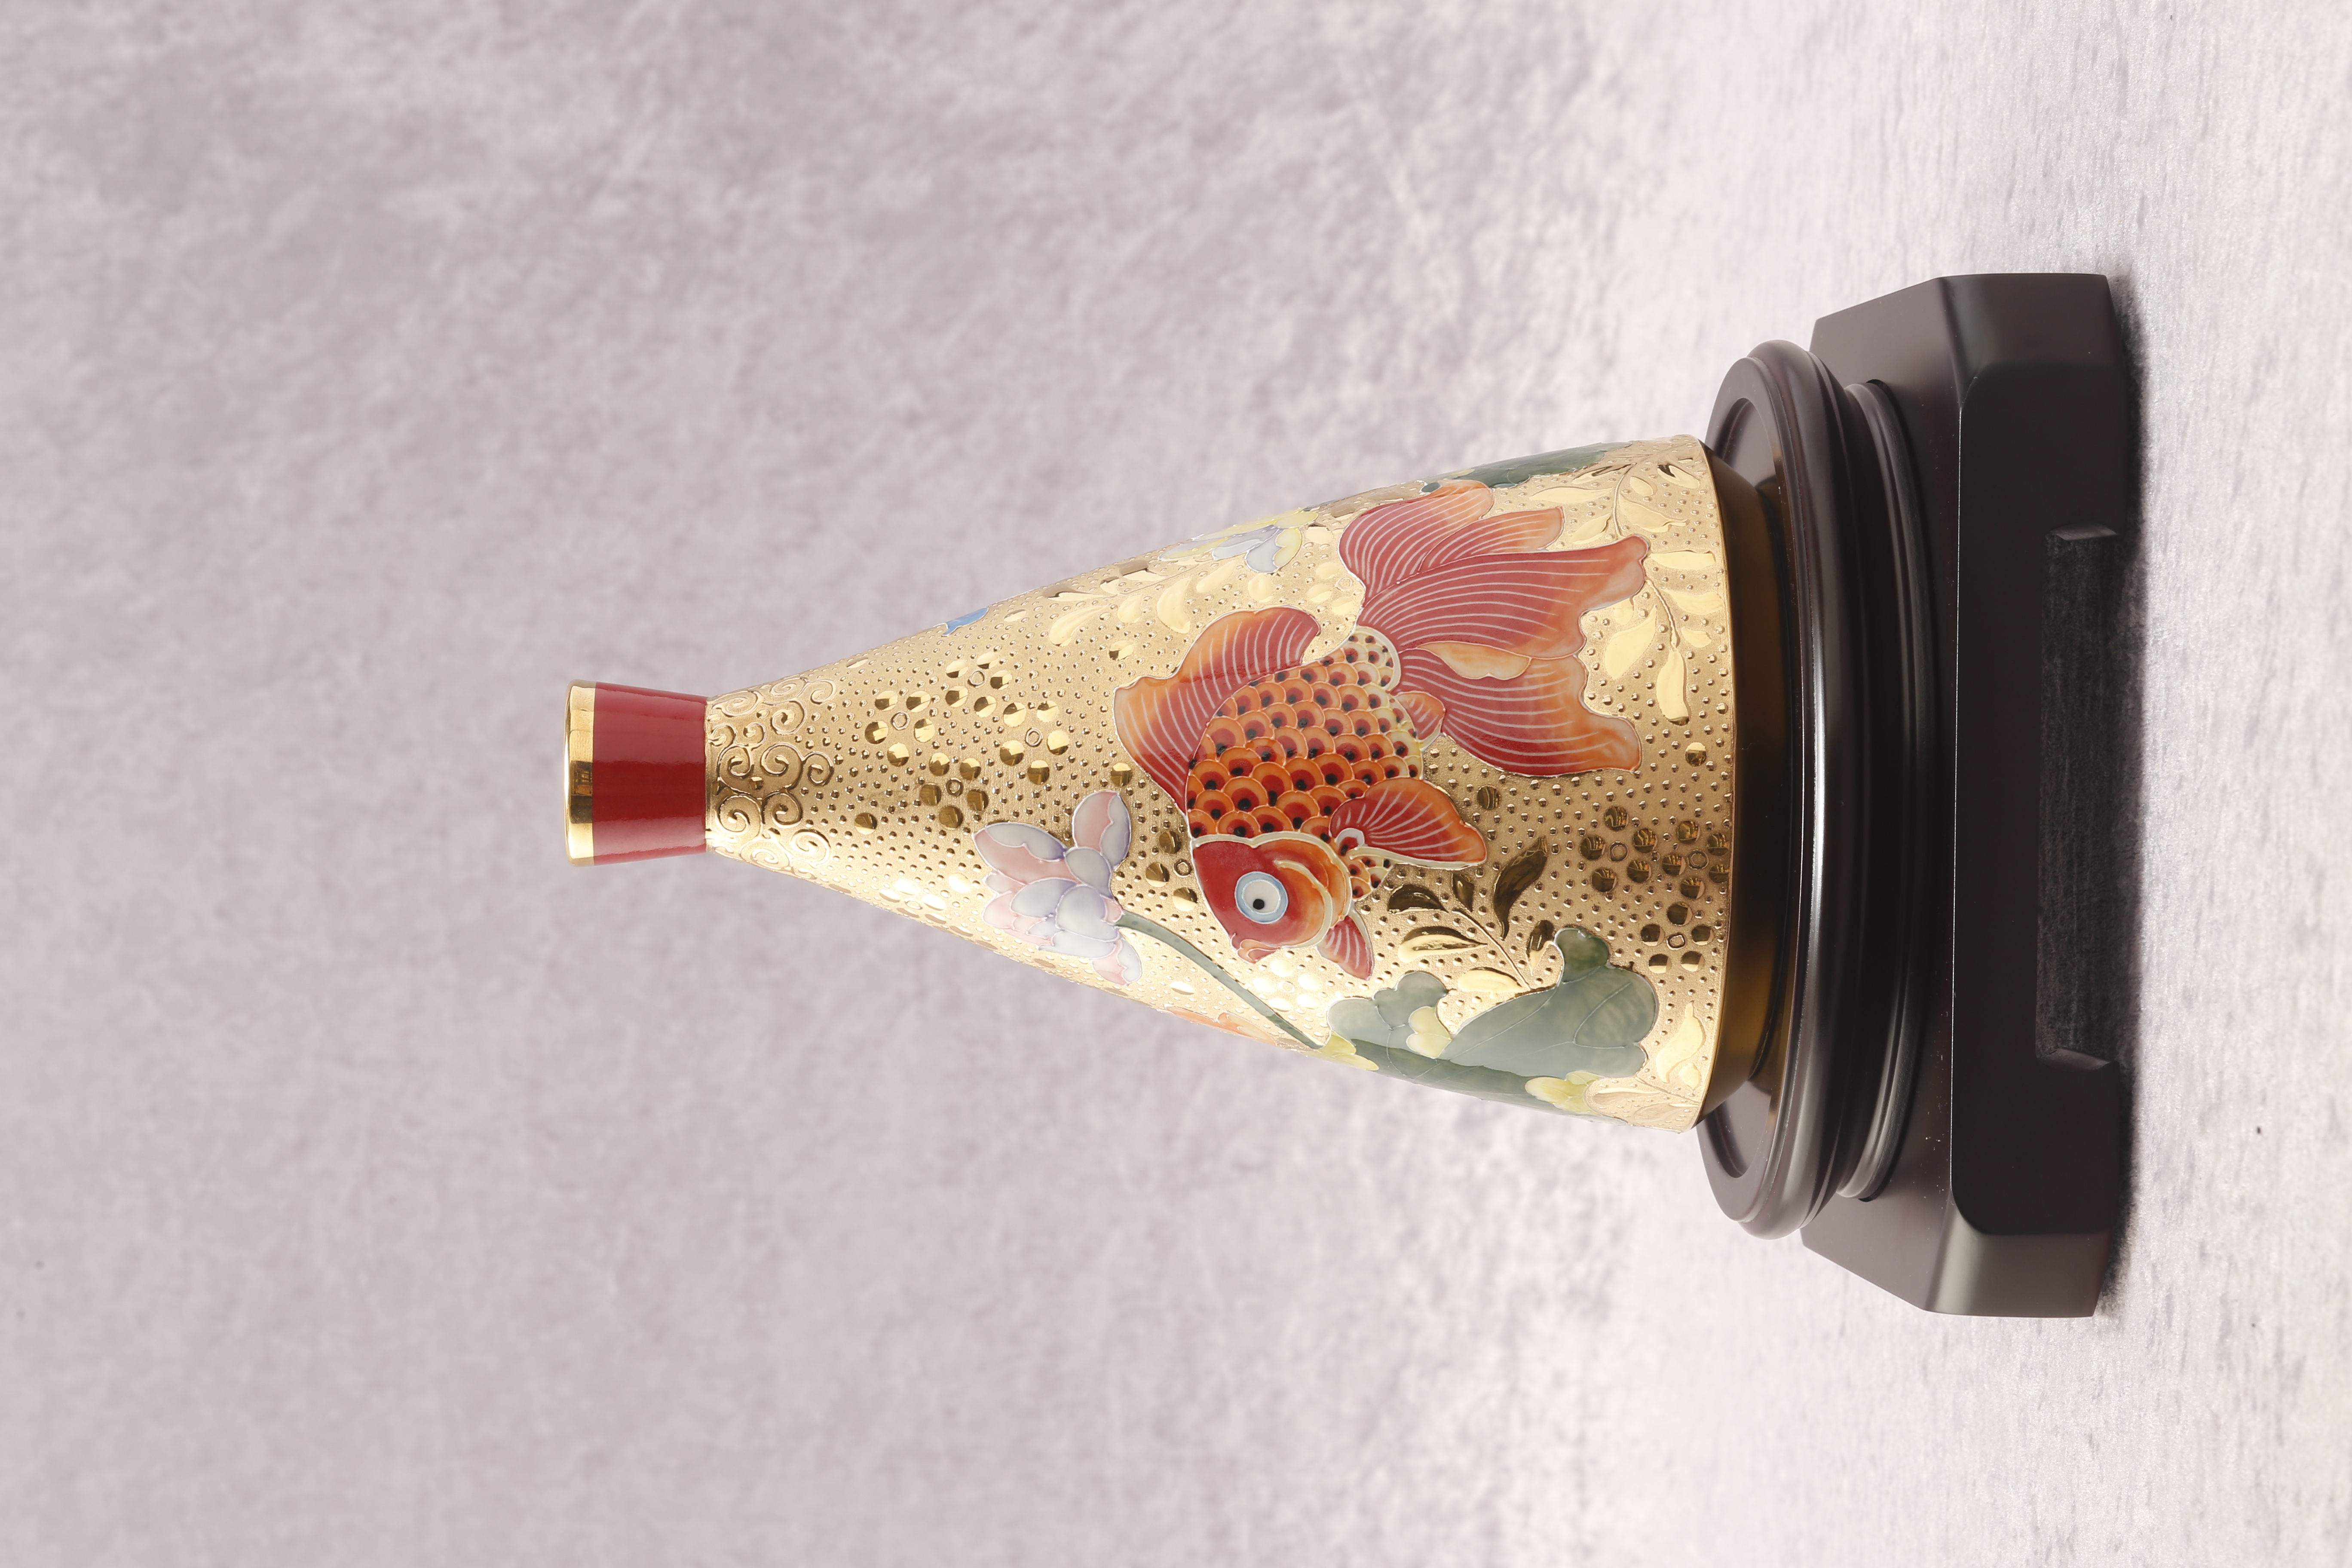 台華窯(TAI HWA)　雕金堆線金魚小口造型瓶　金魚　牡丹　花瓶　観賞用磁器製品 台湾美術